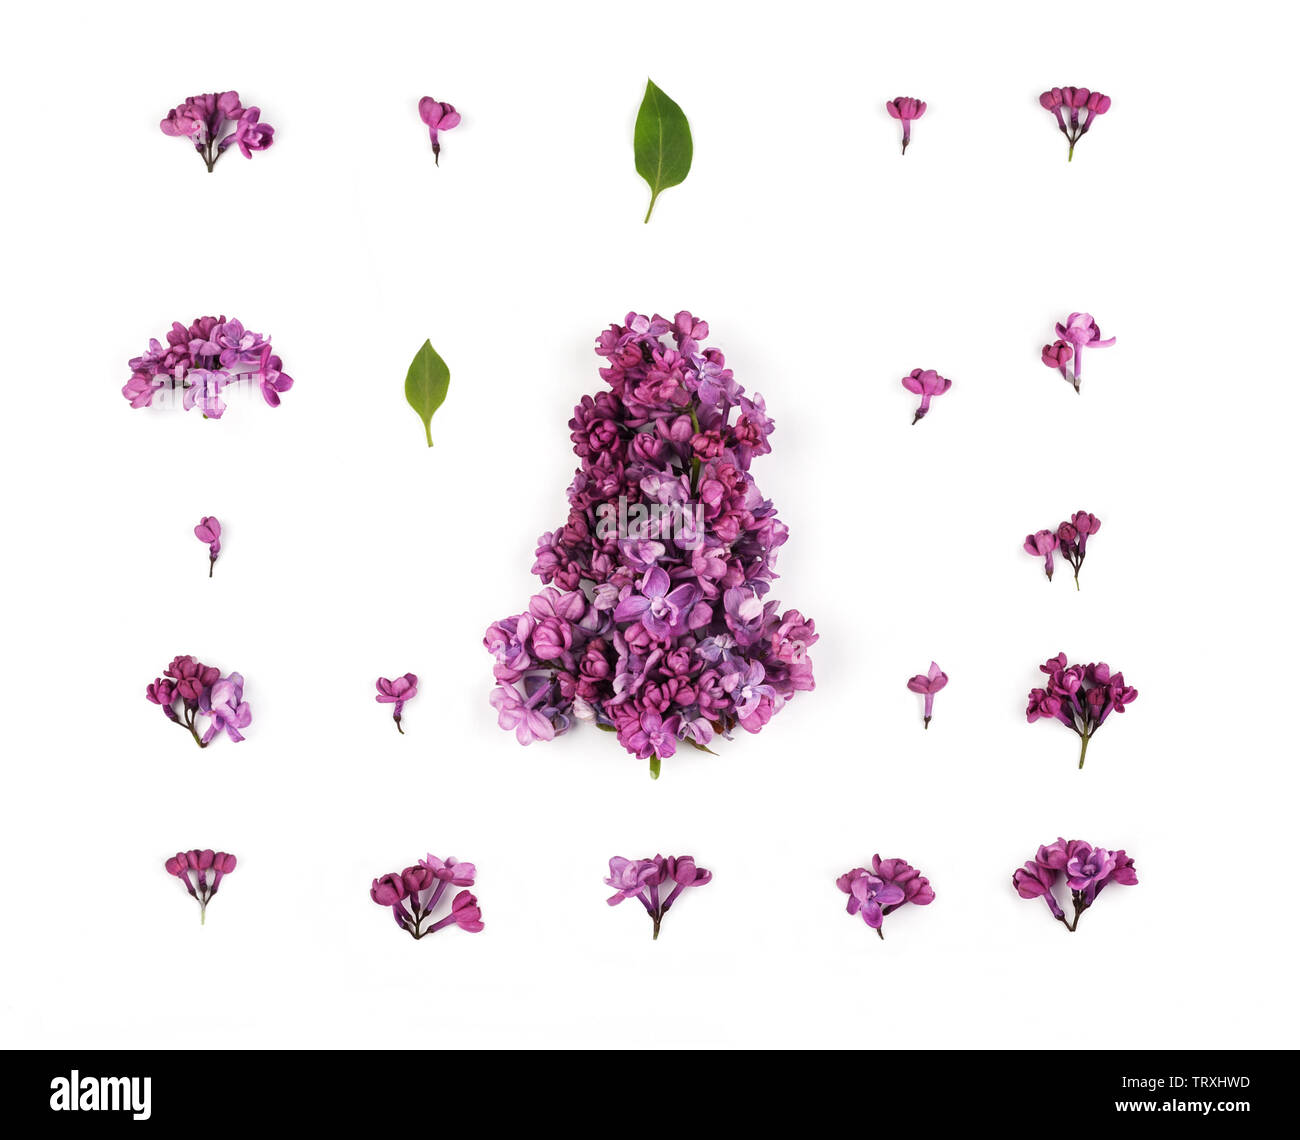 Diseño creativo de violeta, lila y pétalos de flores sobre el fondo blanco. Patrón floral en estilo minimalista. Sentar planas,vista desde arriba. Foto de stock